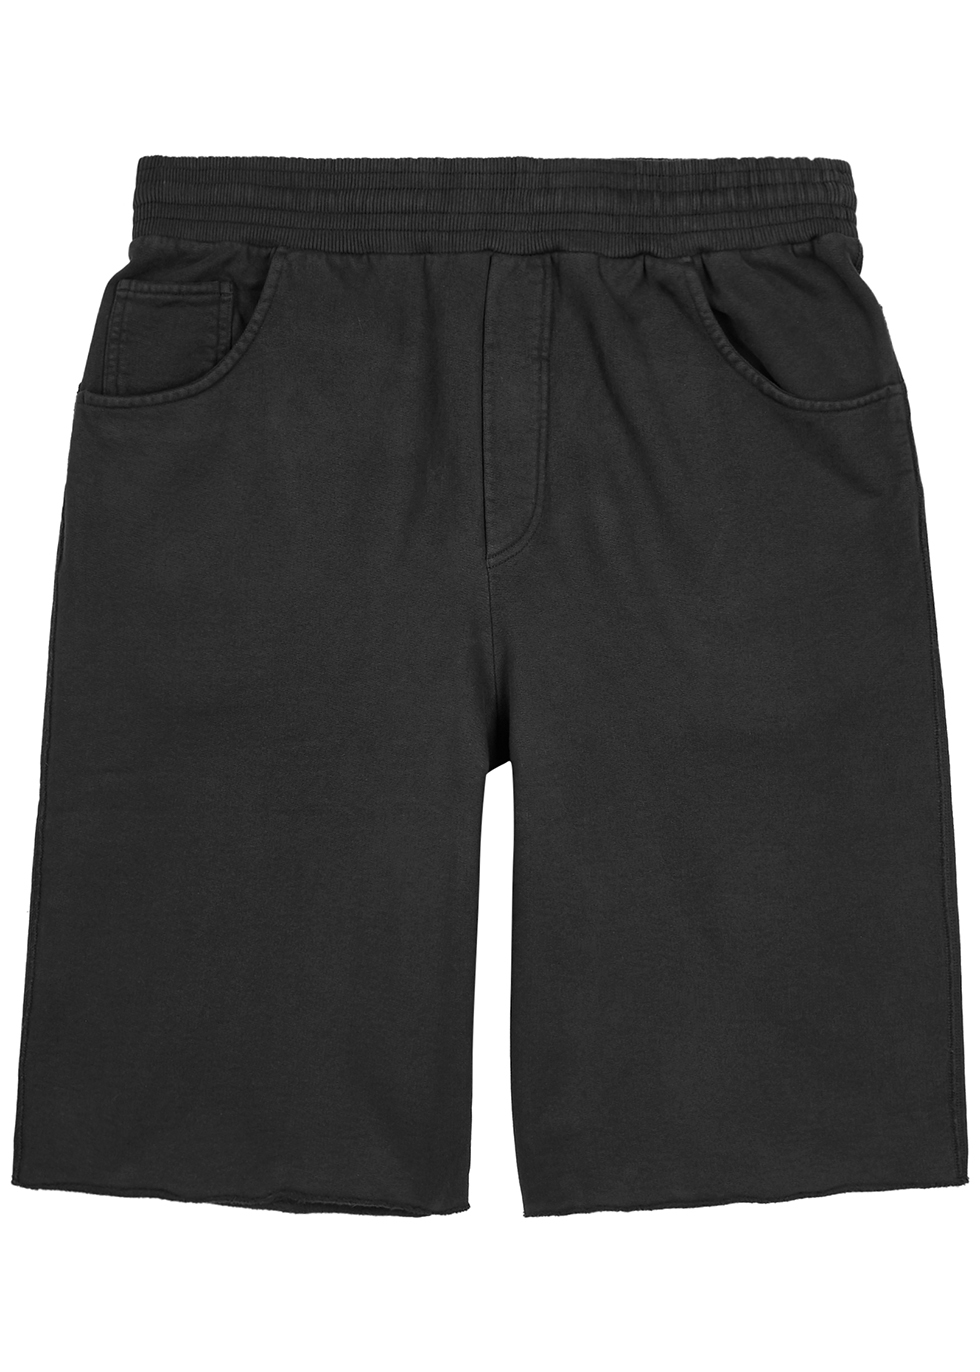 Fide faded black cotton shorts